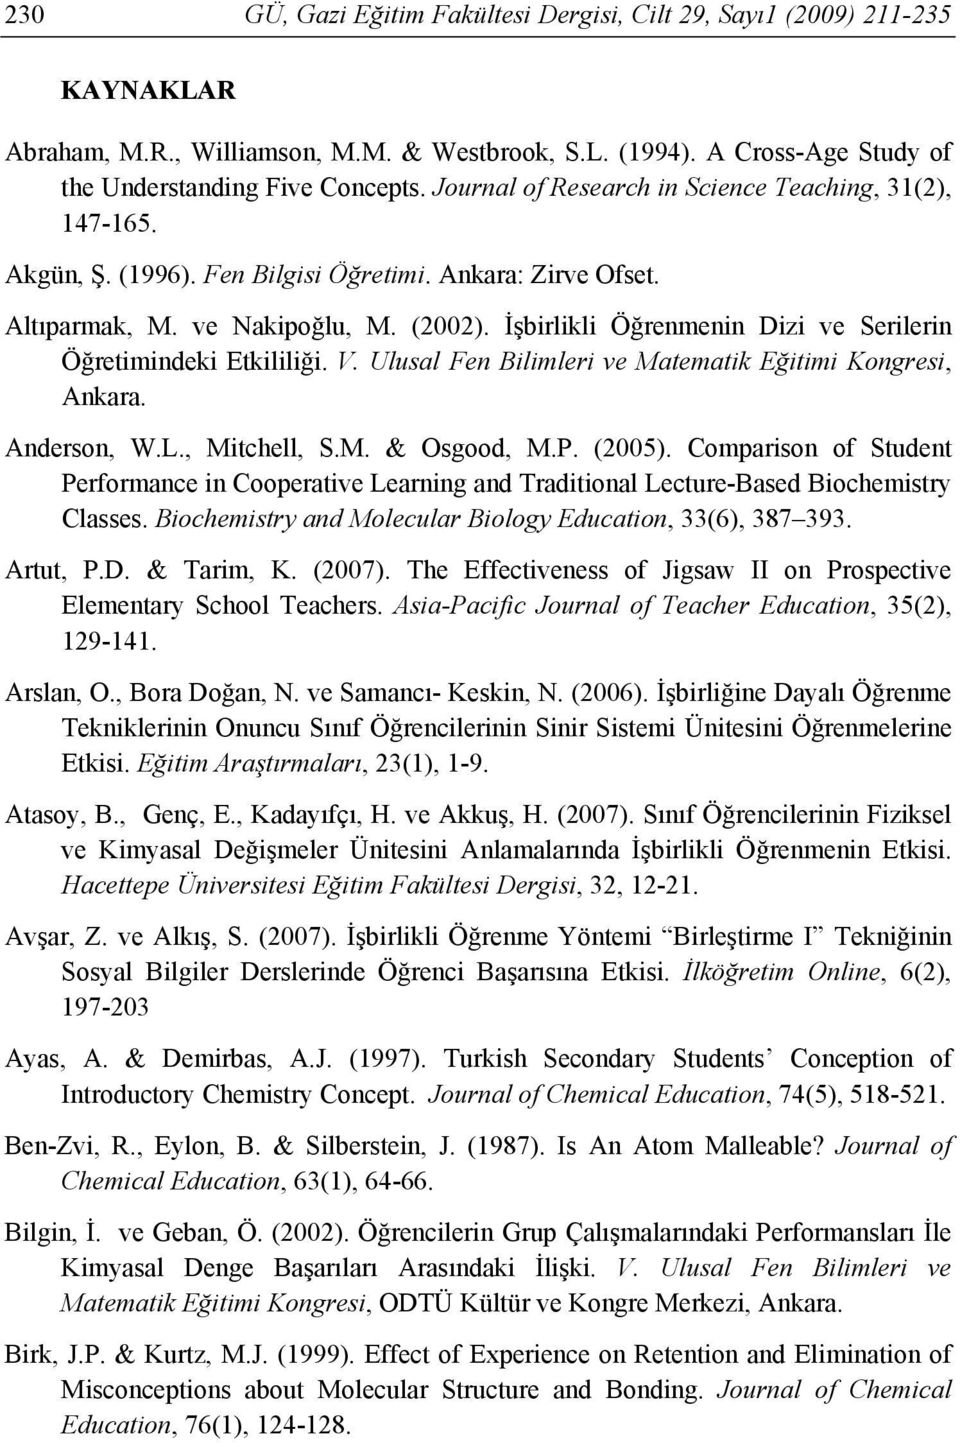 İşbirlikli Öğrenmenin Dizi ve Serilerin Öğretimindeki Etkililiği. V. Ulusal Fen Bilimleri ve Matematik Eğitimi Kongresi, Ankara. Anderson, W.L., Mitchell, S.M. & Osgood, M.P. (2005).